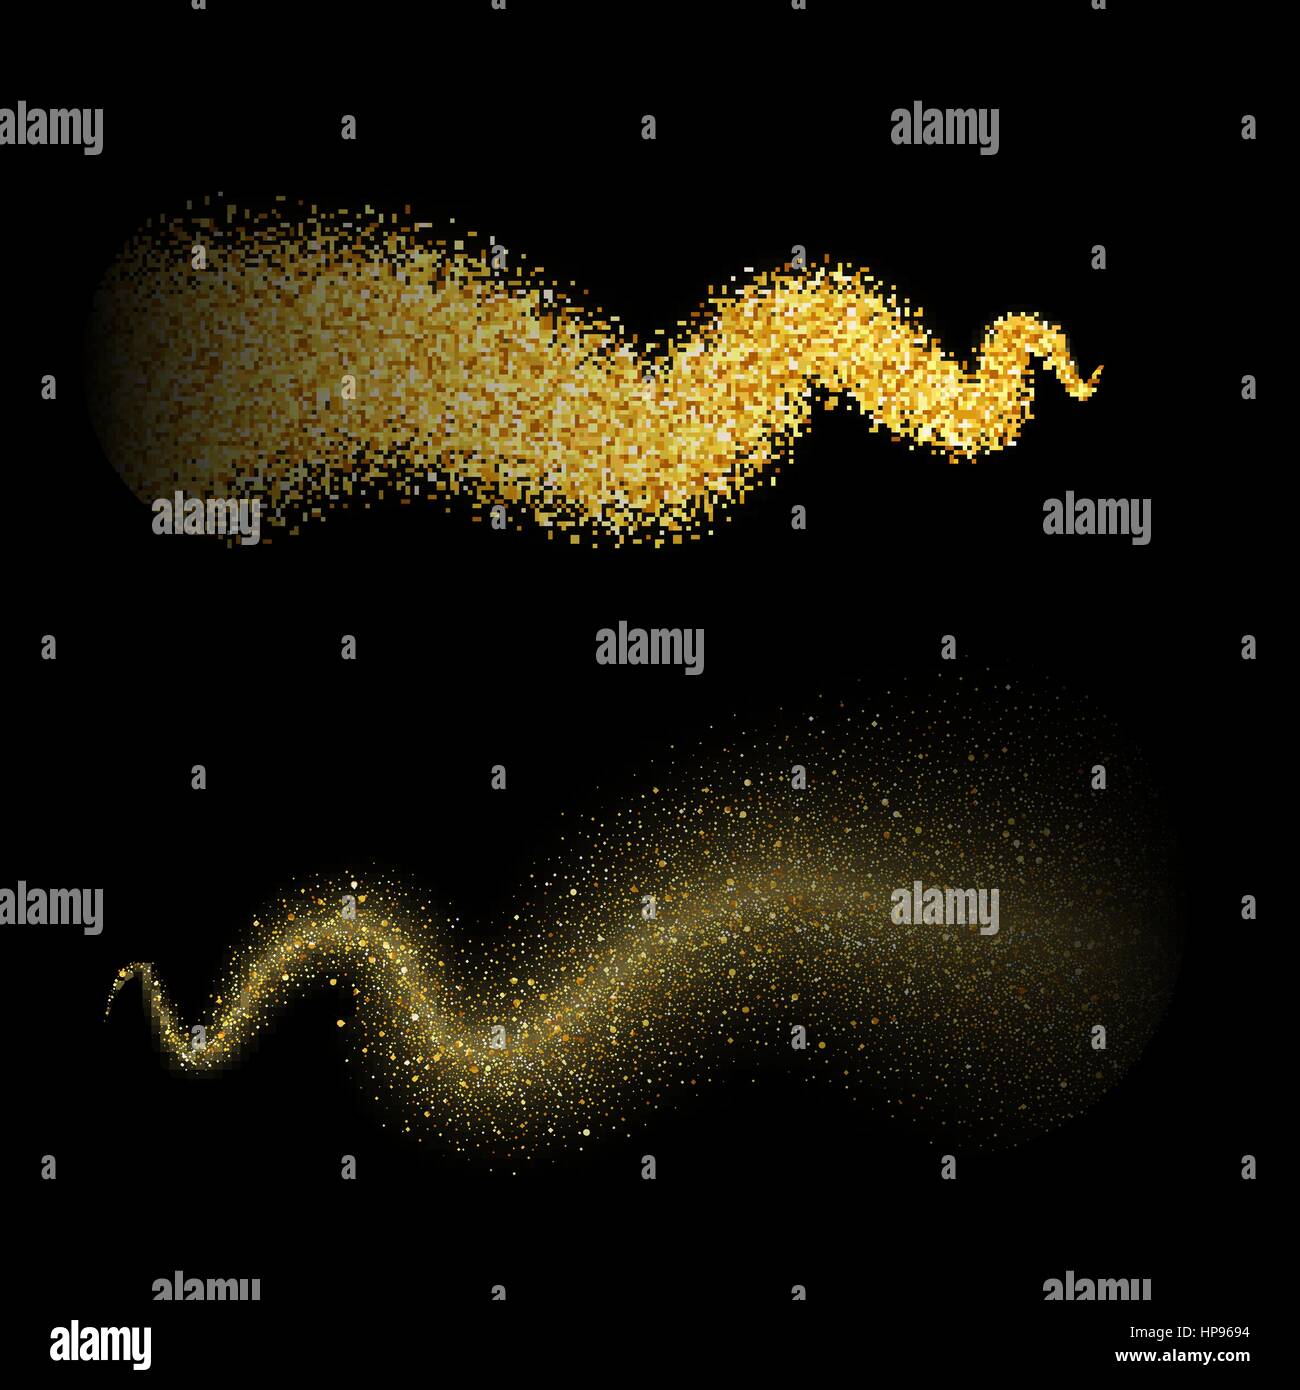 Vektor Goldglitter Welle abstrakter Hintergrund, golden funkelt auf schwarzem Hintergrund, vip-Design-Vorlage Stock Vektor